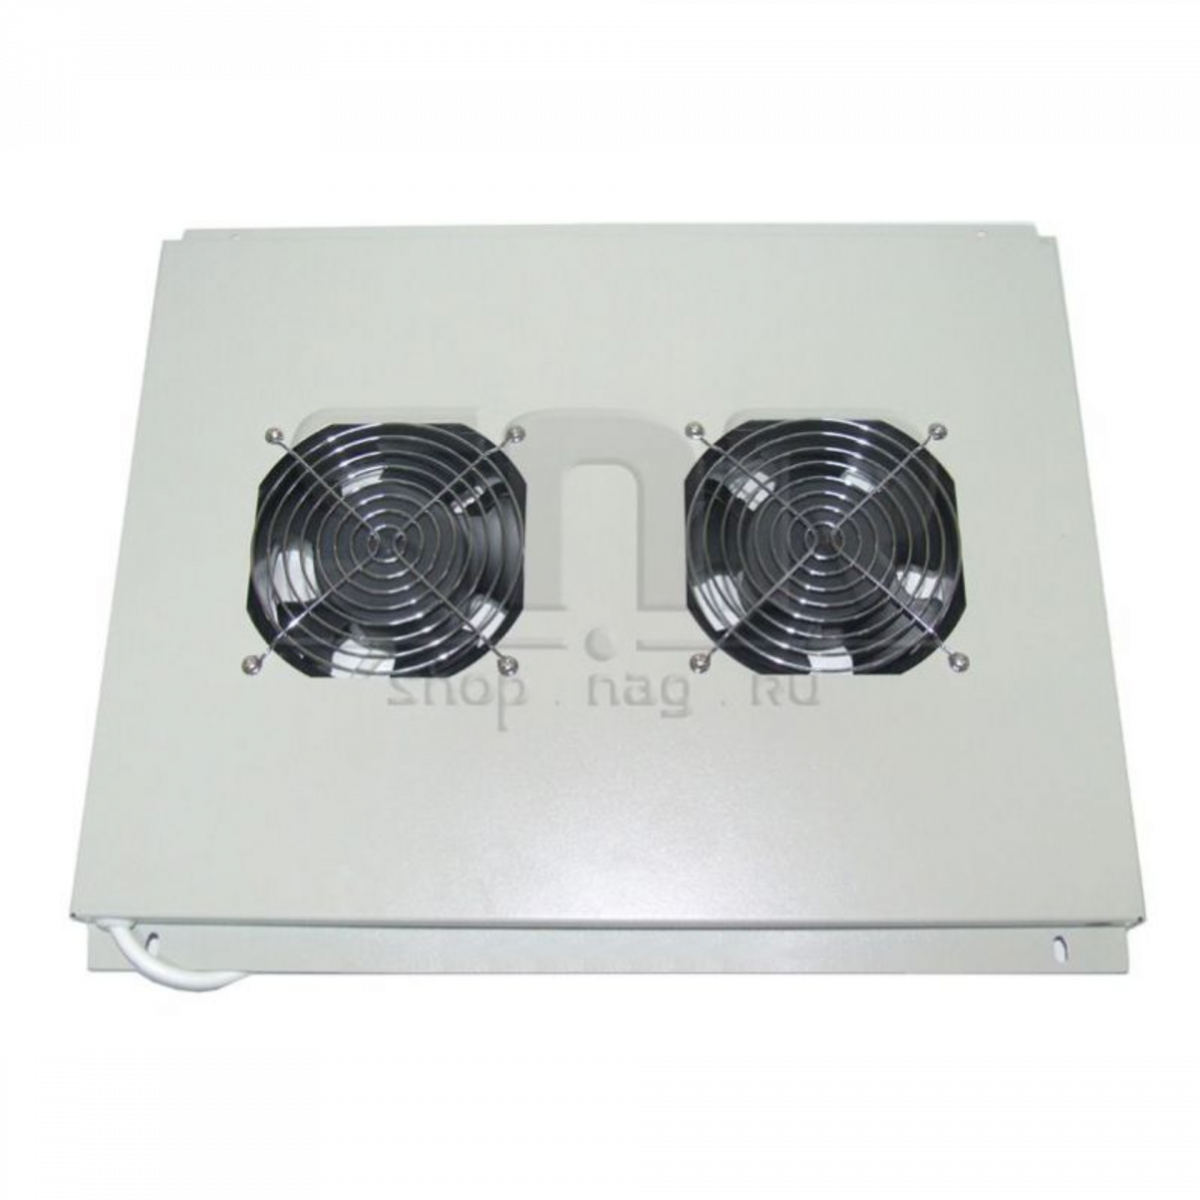 Блок вентиляторов для шкафов TFC глубиной 600мм, 2 вентилятора, серый